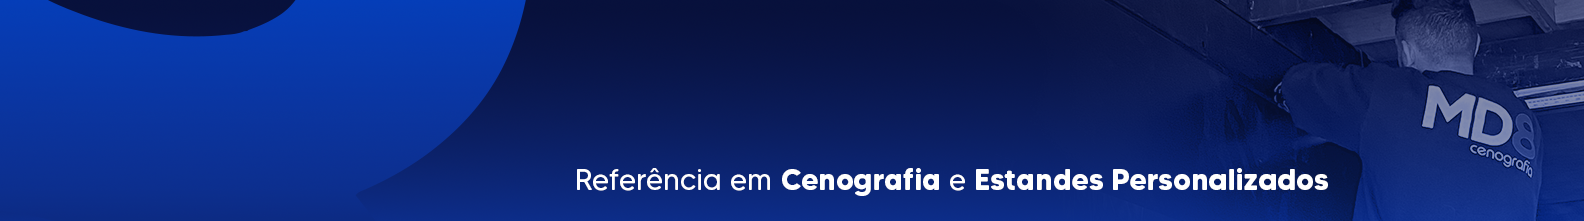 Guilherme Barão de Mello's profile banner